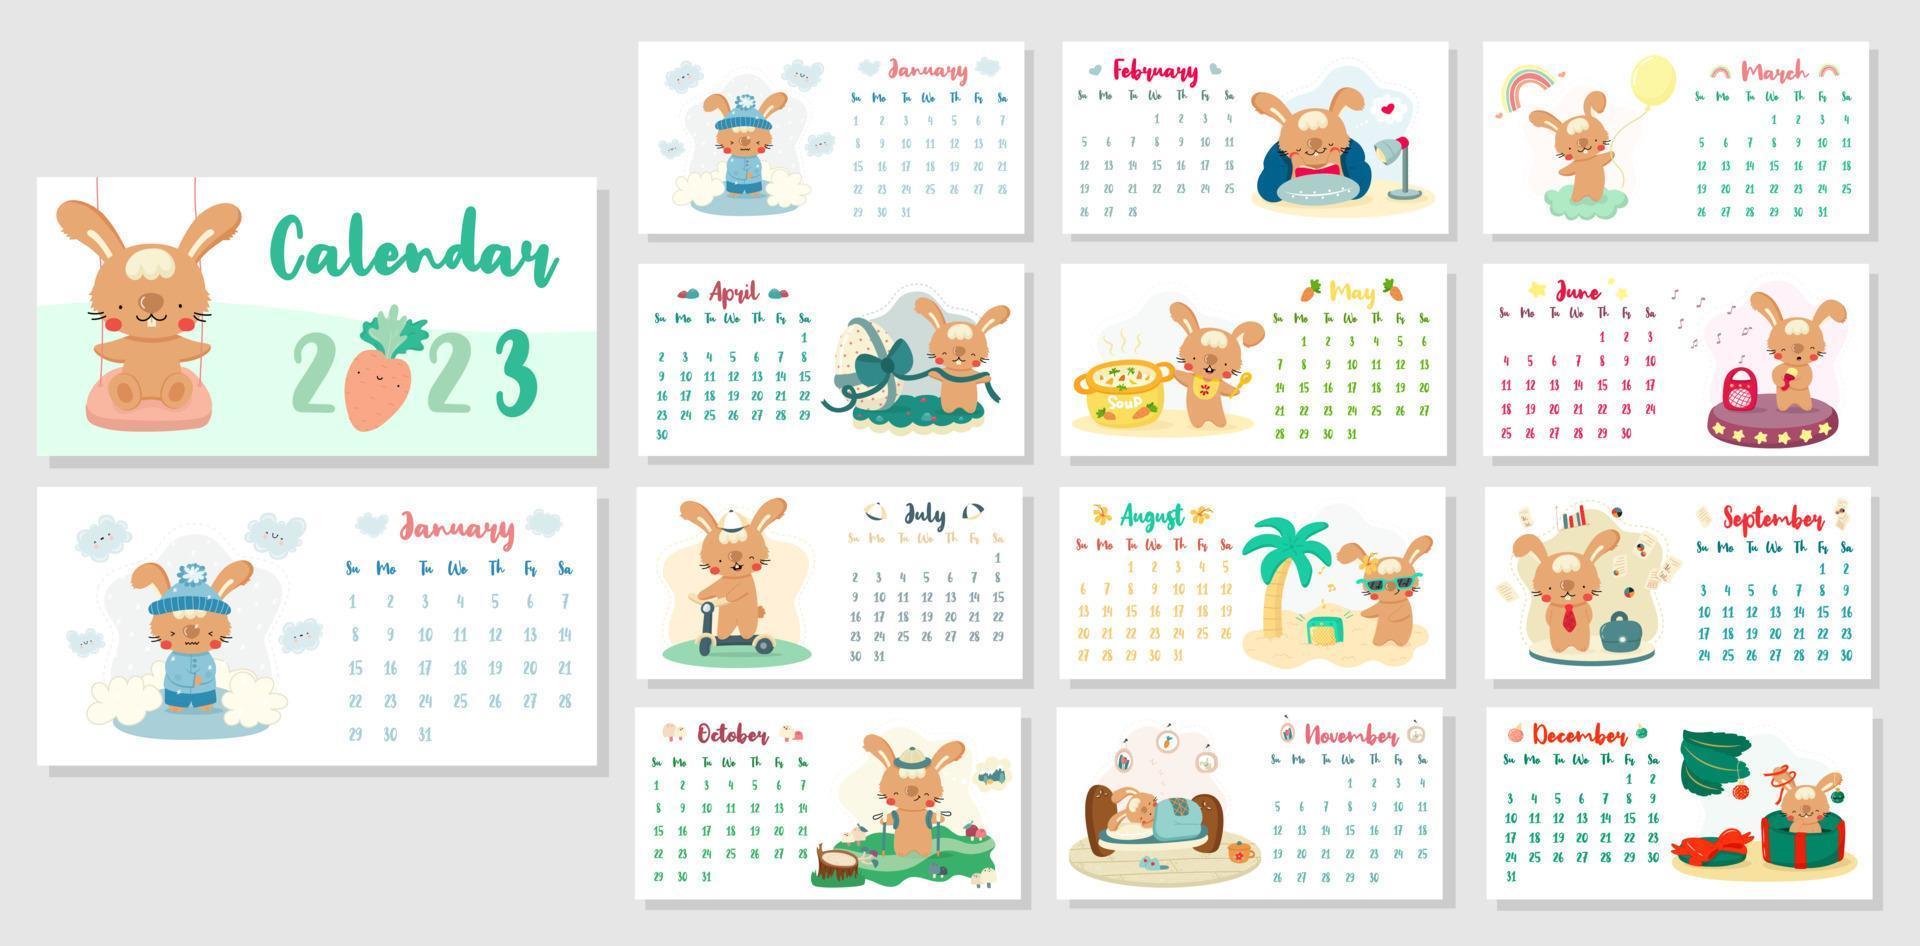 calendario de escritorio horizontal 2023 con lindos conejos de dibujos animados. el año del conejo según el calendario chino. portada y páginas de 12 meses con ilustraciones de temporada. semana comienza el domingo. vector